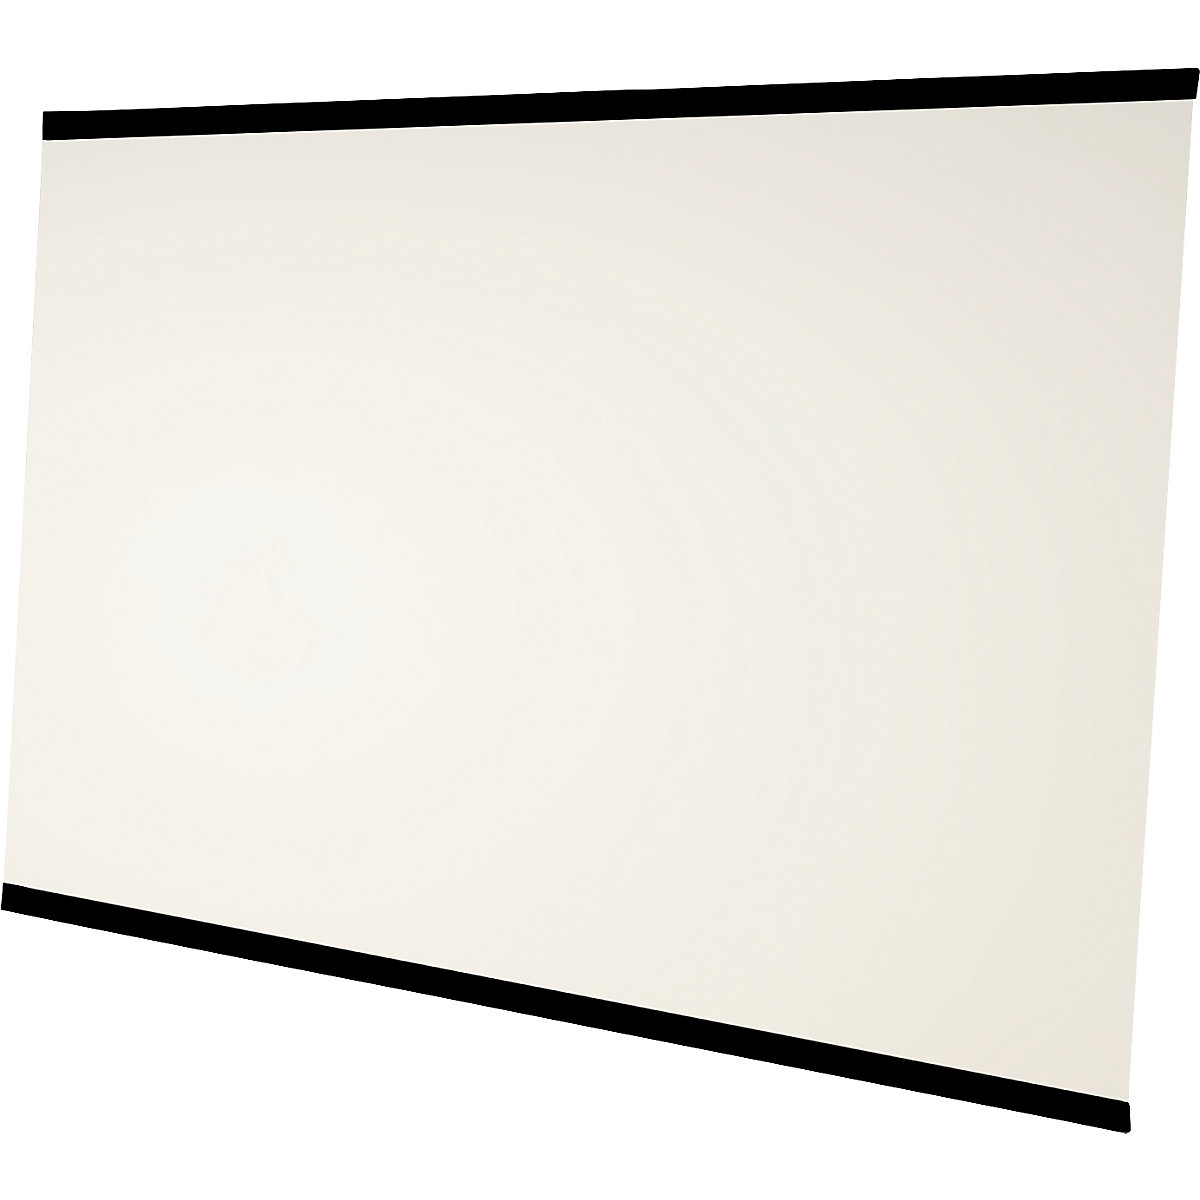 LEAN WALL Whiteboard rahmenlos Chameleon, emailliert, weiß, BxH 2940 x 2216 mm, 3 Paneele-8